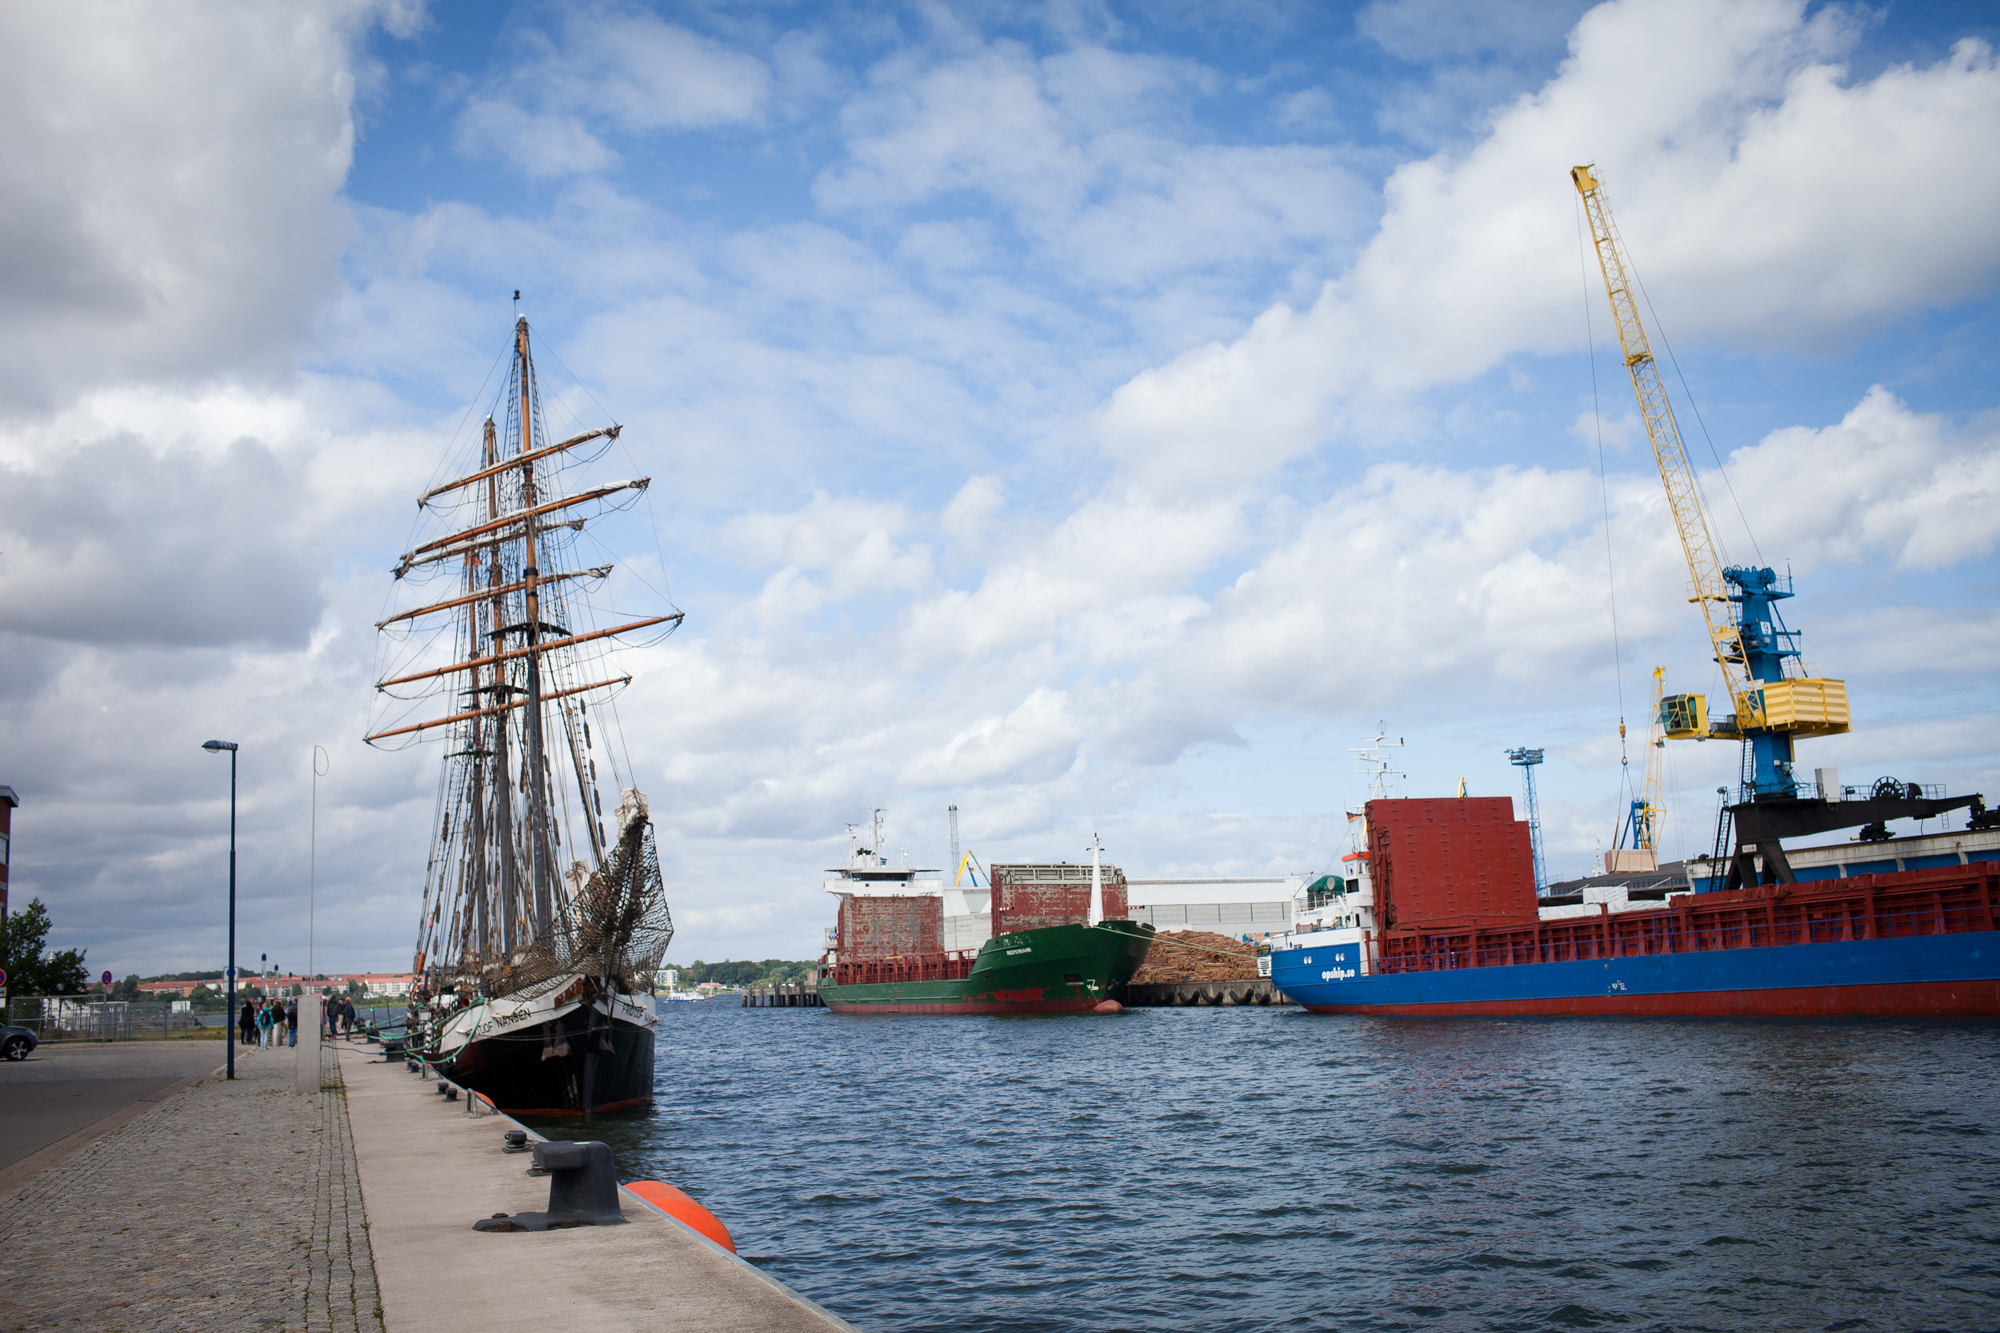 Fridjof Nanson im Hafen in Wismar. 31. 7. 2015. Charlotte Strauss auf dem Schiff Fridjof Nanson wo sie ihren Ausbildungsturn om 31. 7 bis 5. 8 absolviert. Fotograf: Evi Lemberger